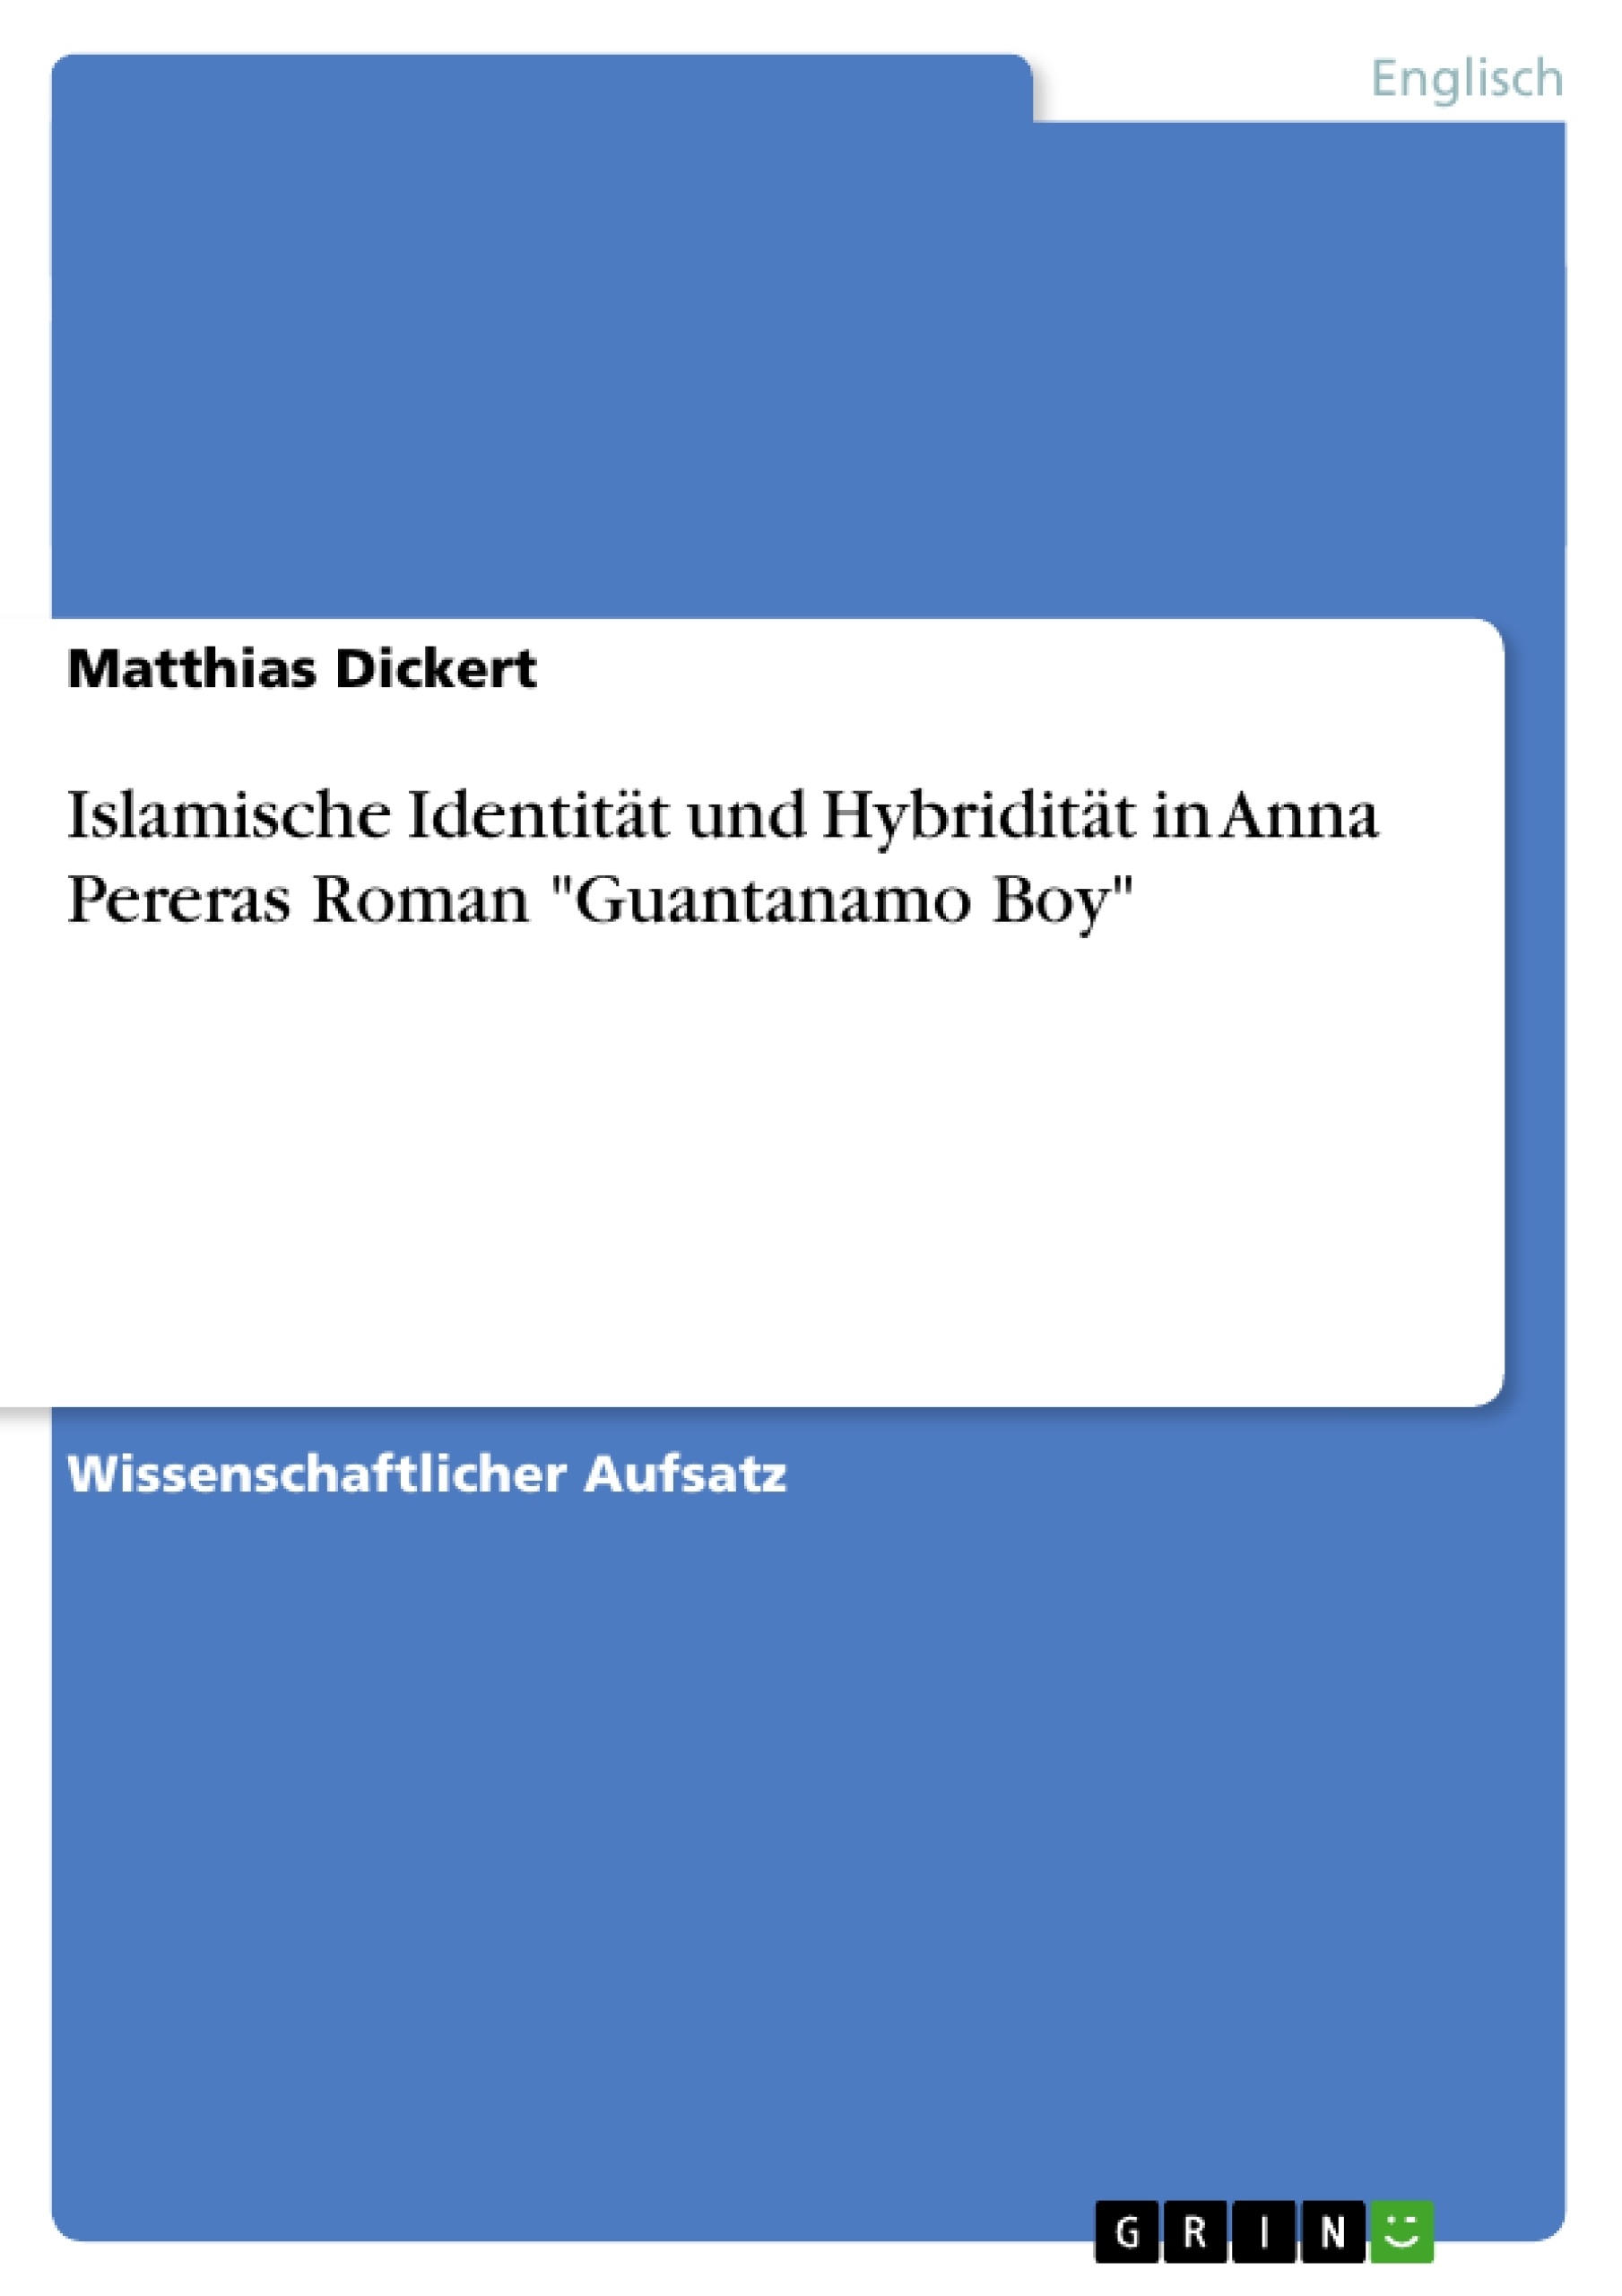 Titre: Islamische Identität und Hybridität in Anna Pereras Roman "Guantanamo Boy"